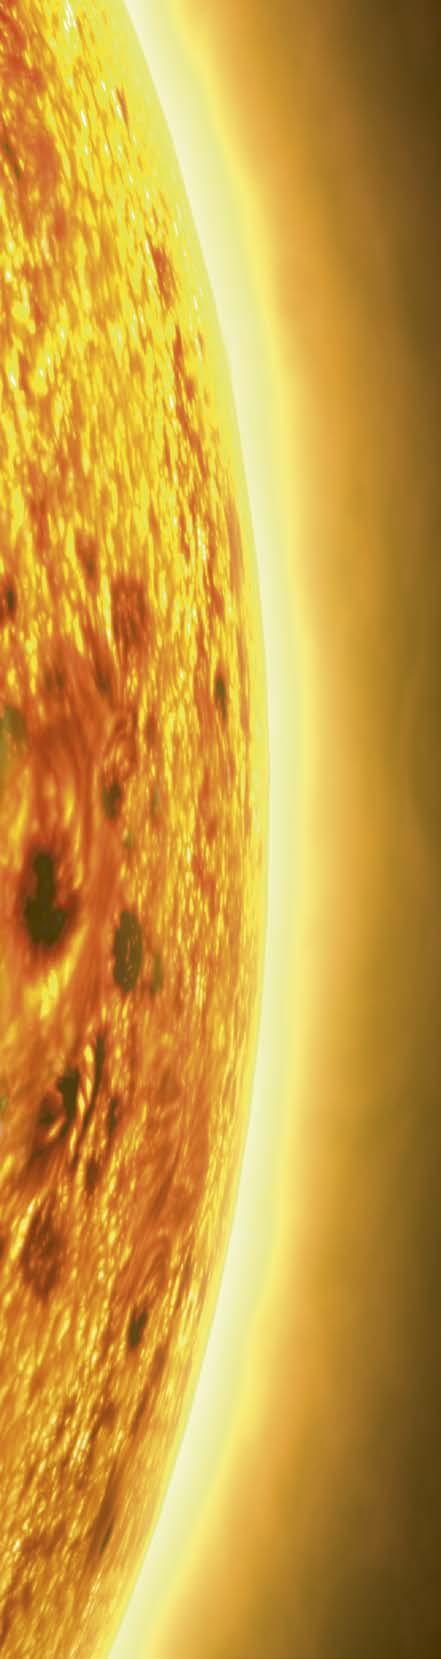 mikrobeja Venuksen pinnalla on 0 asteen kuumuus ja taivaalta sataa syövyttävää happoa.